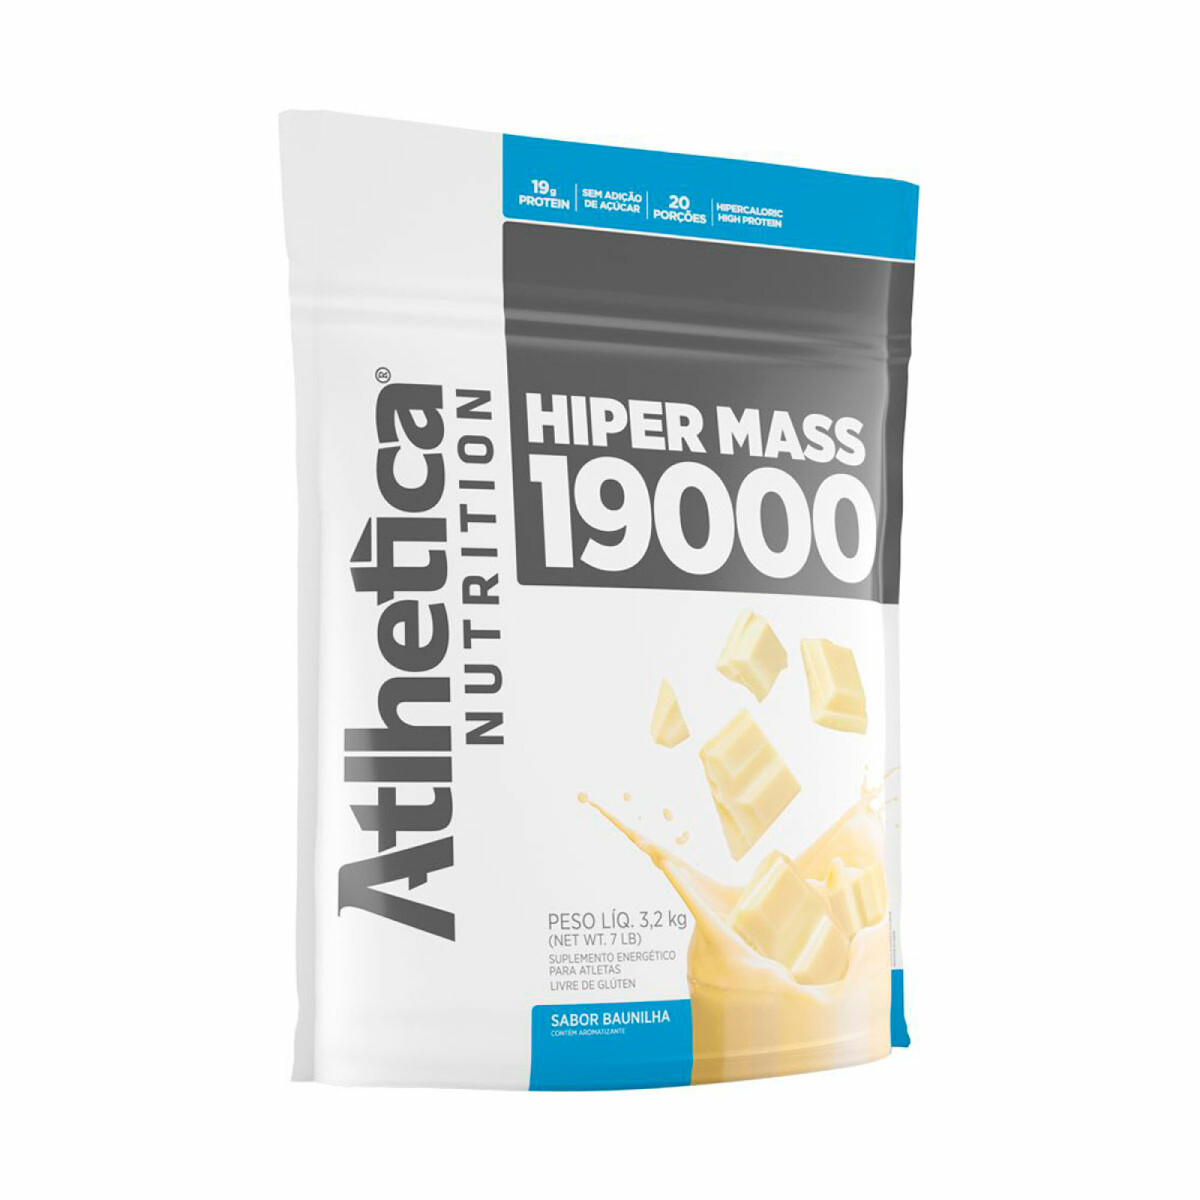 Suplemento Atlhetica Hiper Mass 19000 3,2KG - VAINILLA 